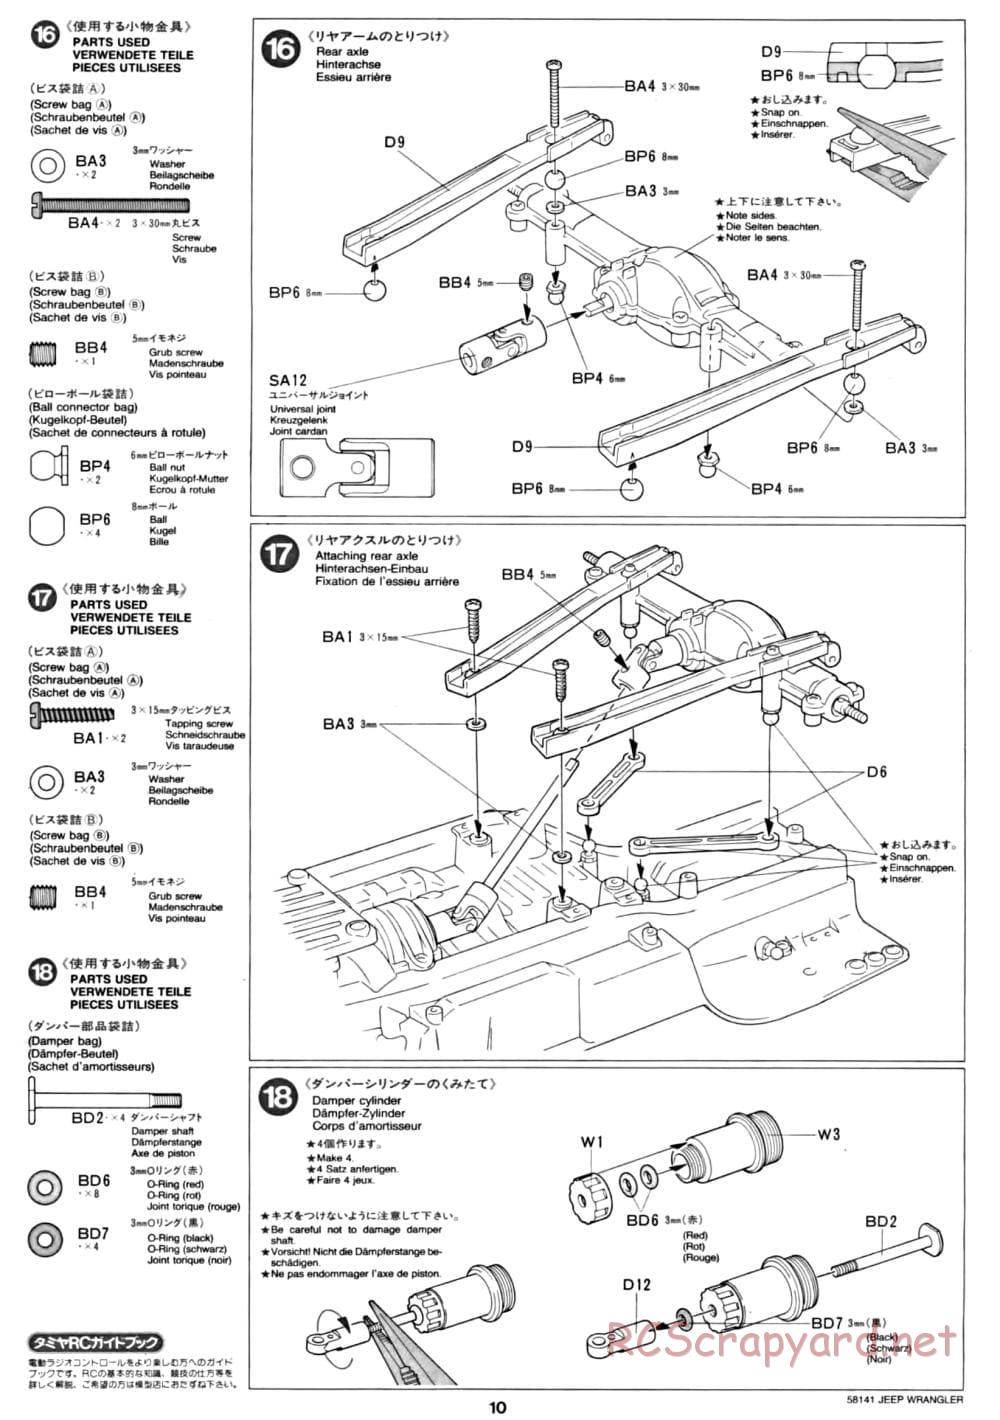 Tamiya - Jeep Wrangler - CC-01 Chassis - Manual - Page 10